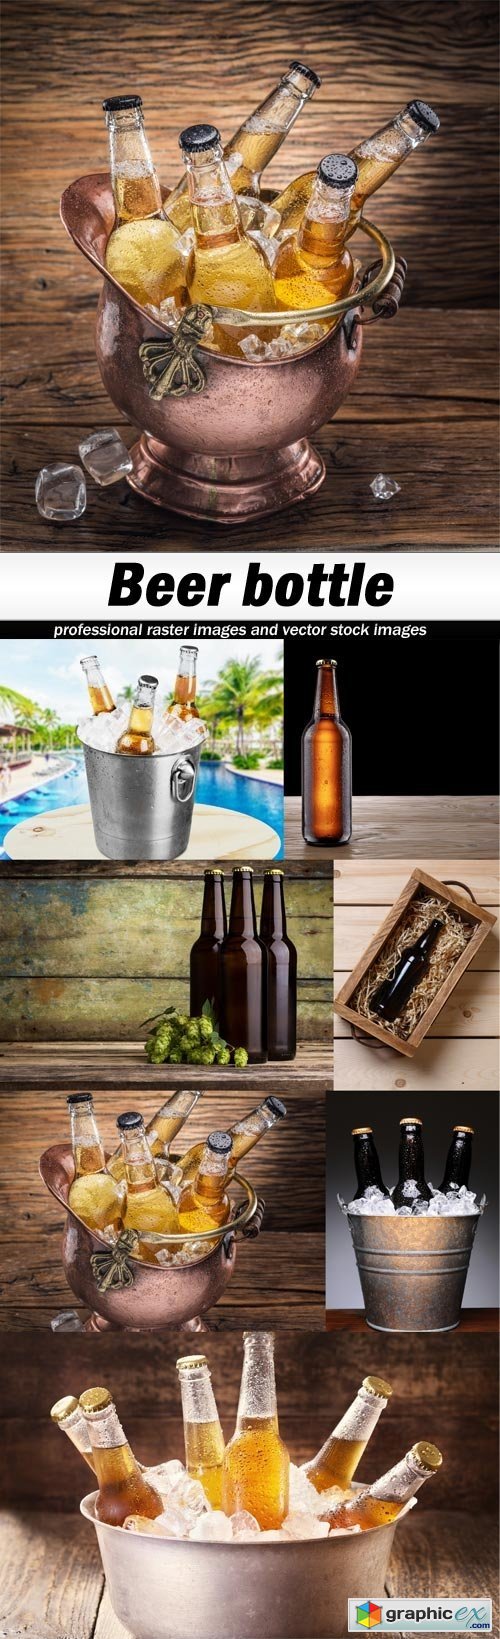 Beer bottle-7xJPEGs